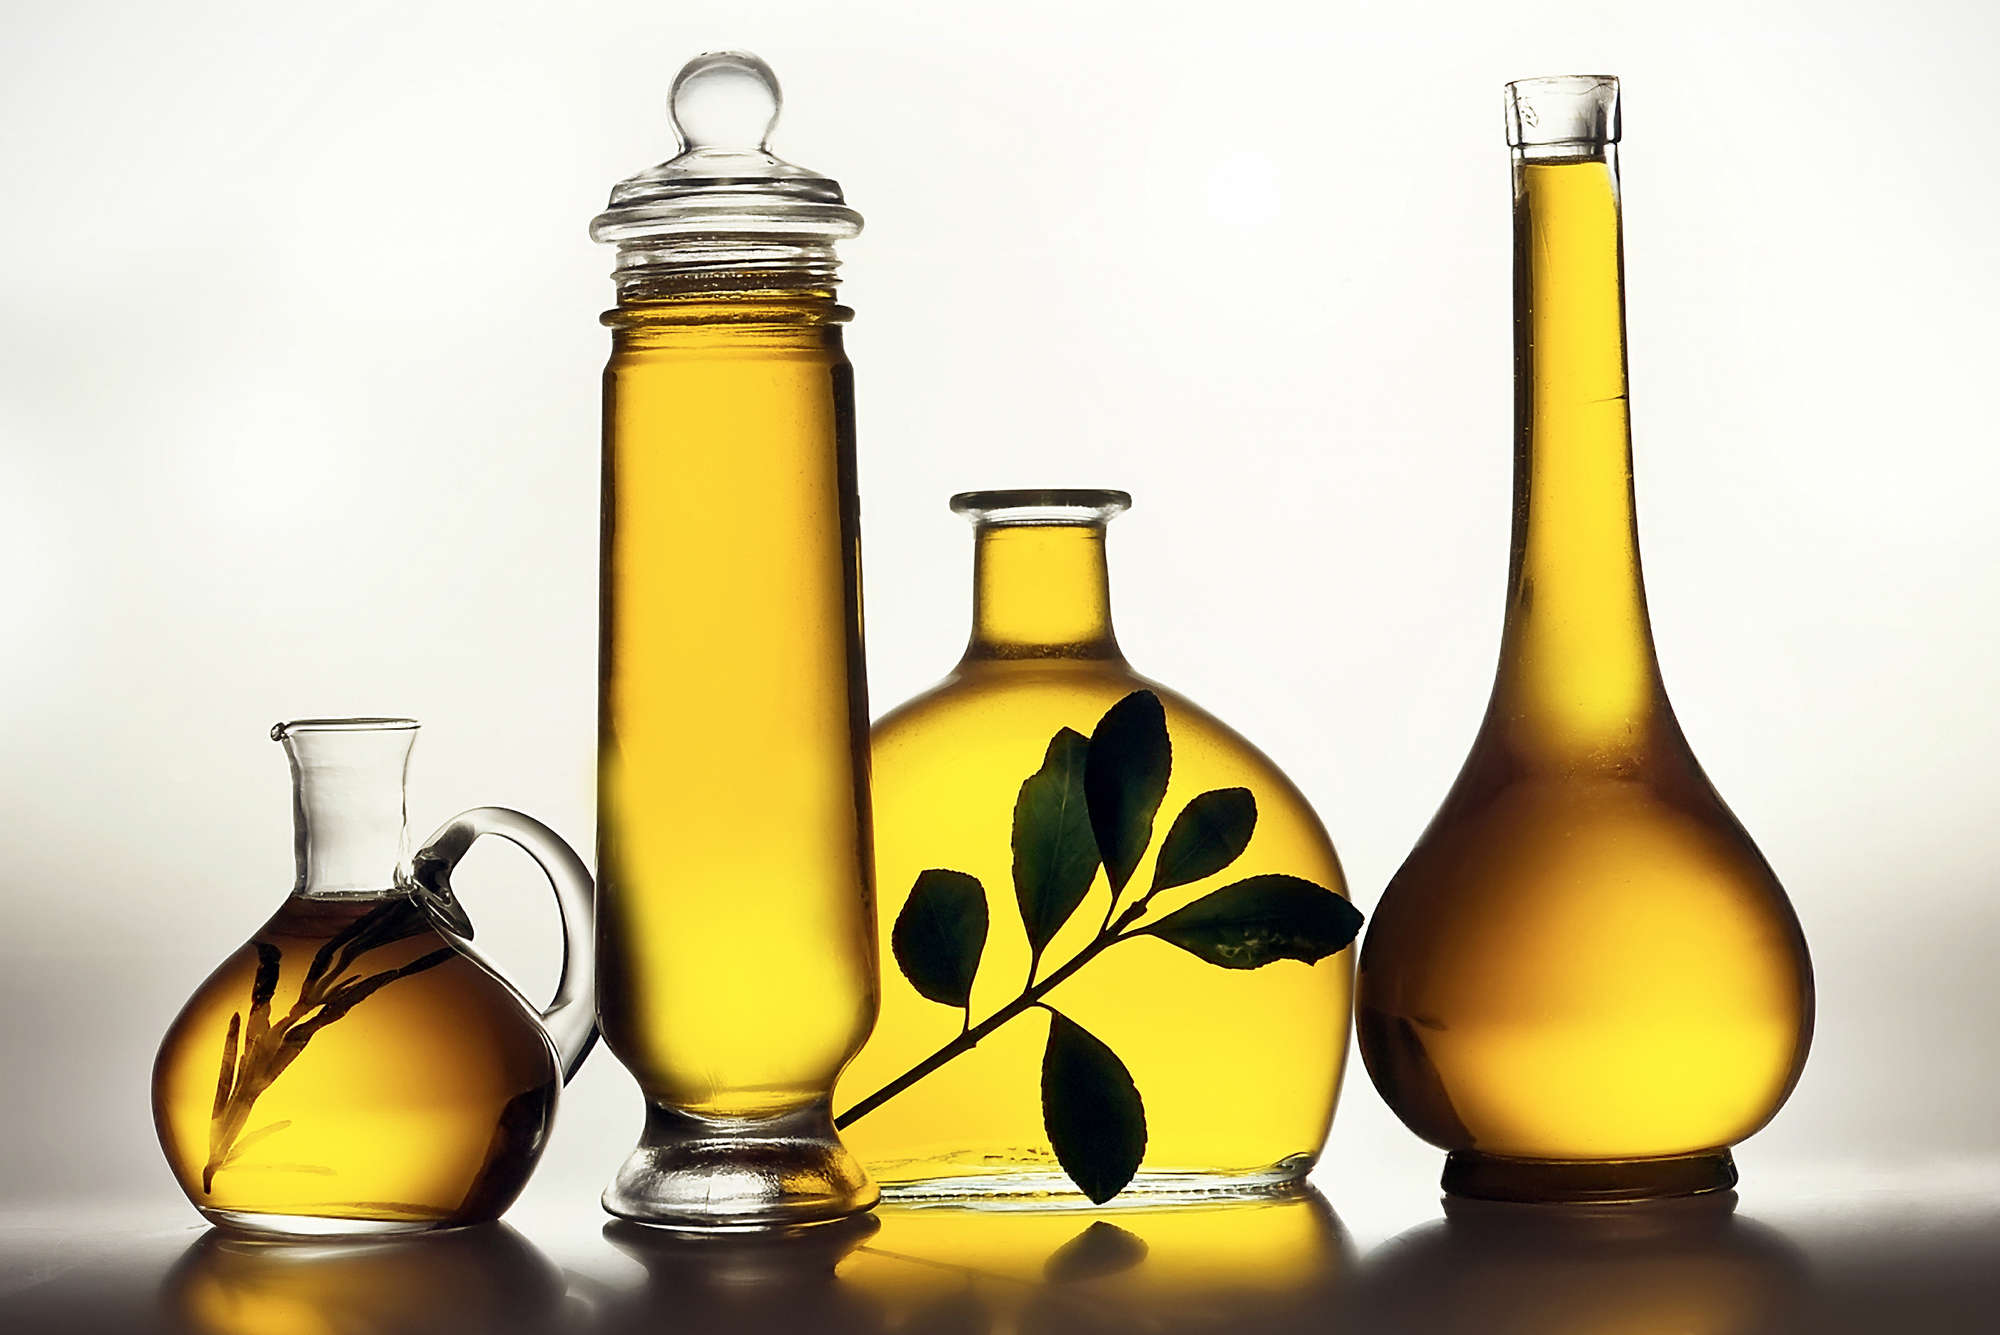             papiers peints à impression numérique bouteilles d'huile d'olive - nacre intissé lisse
        